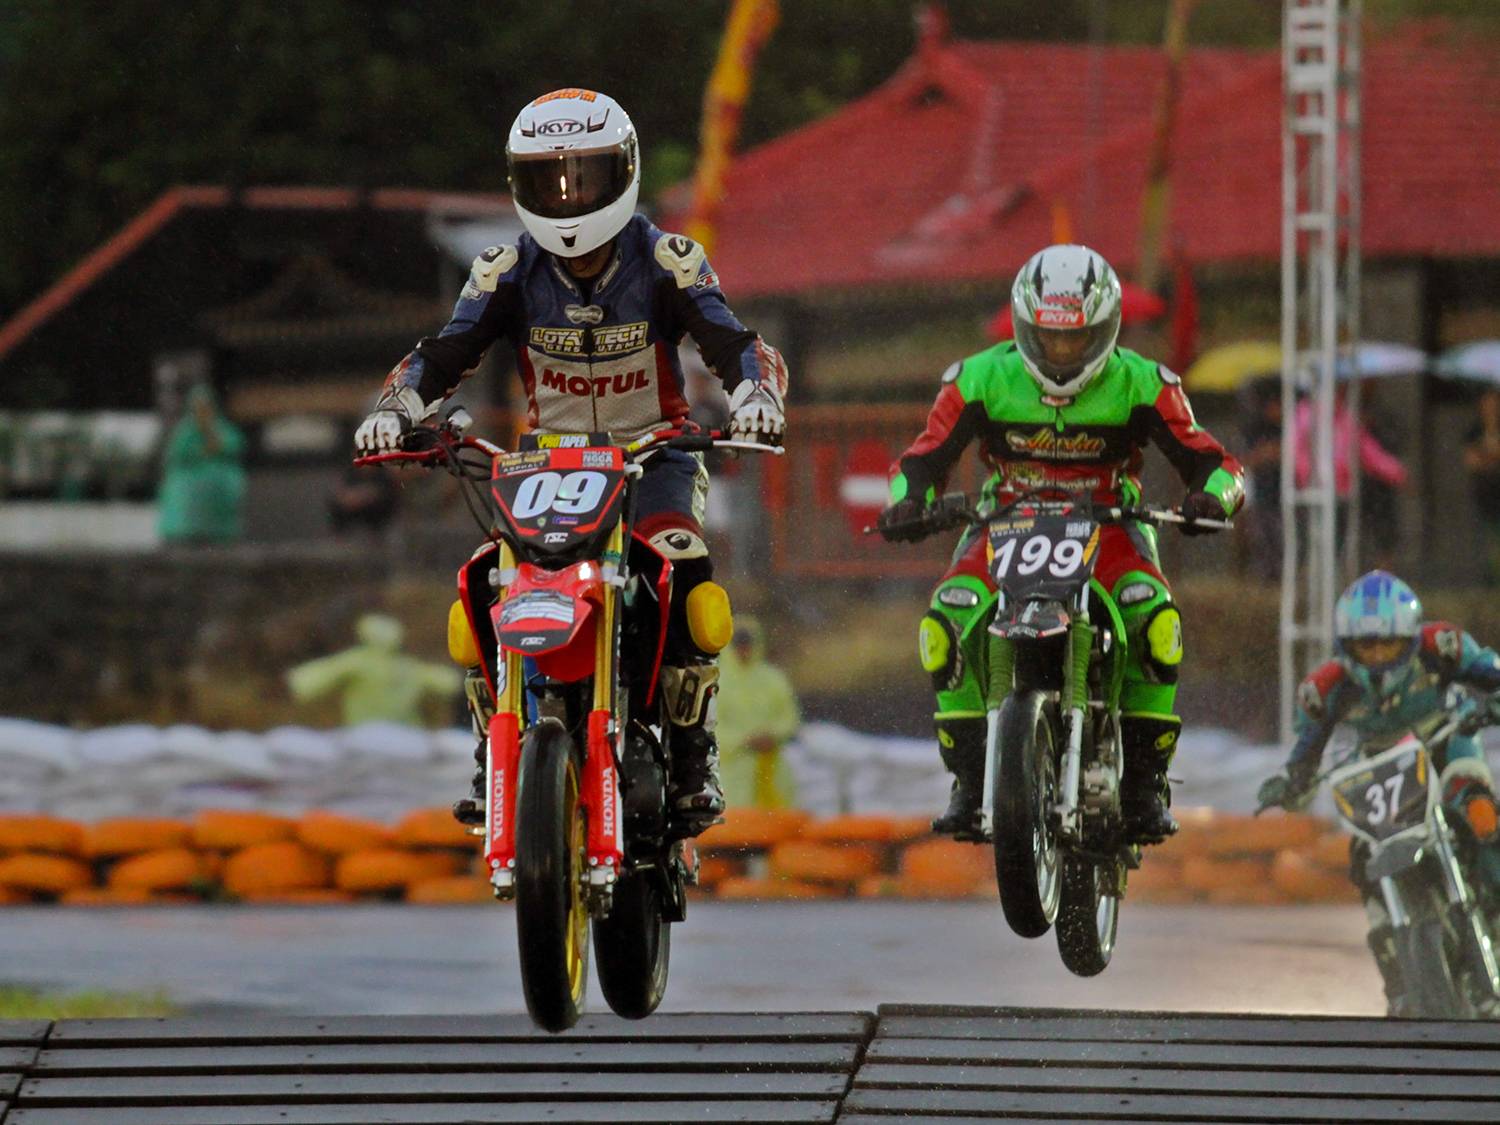 Pembukaan seri pertama Trial Game Asphalt kali ini digelar di kota Boyolali Jawa Tengah